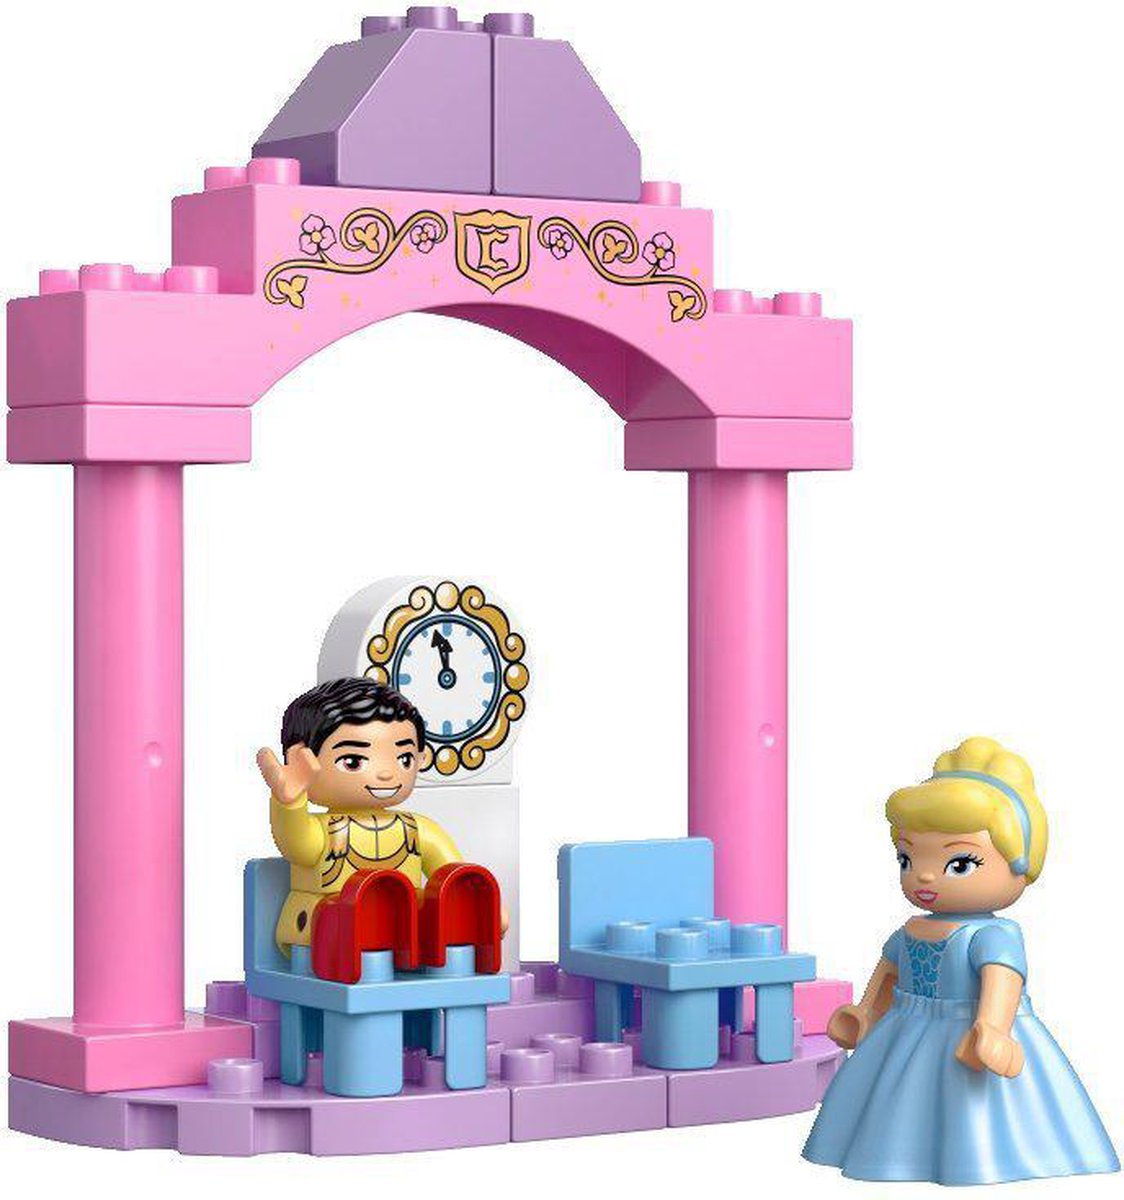 LEGO Duplo Disney Princess Assepoester's Kasteel - 6154 | bol.com